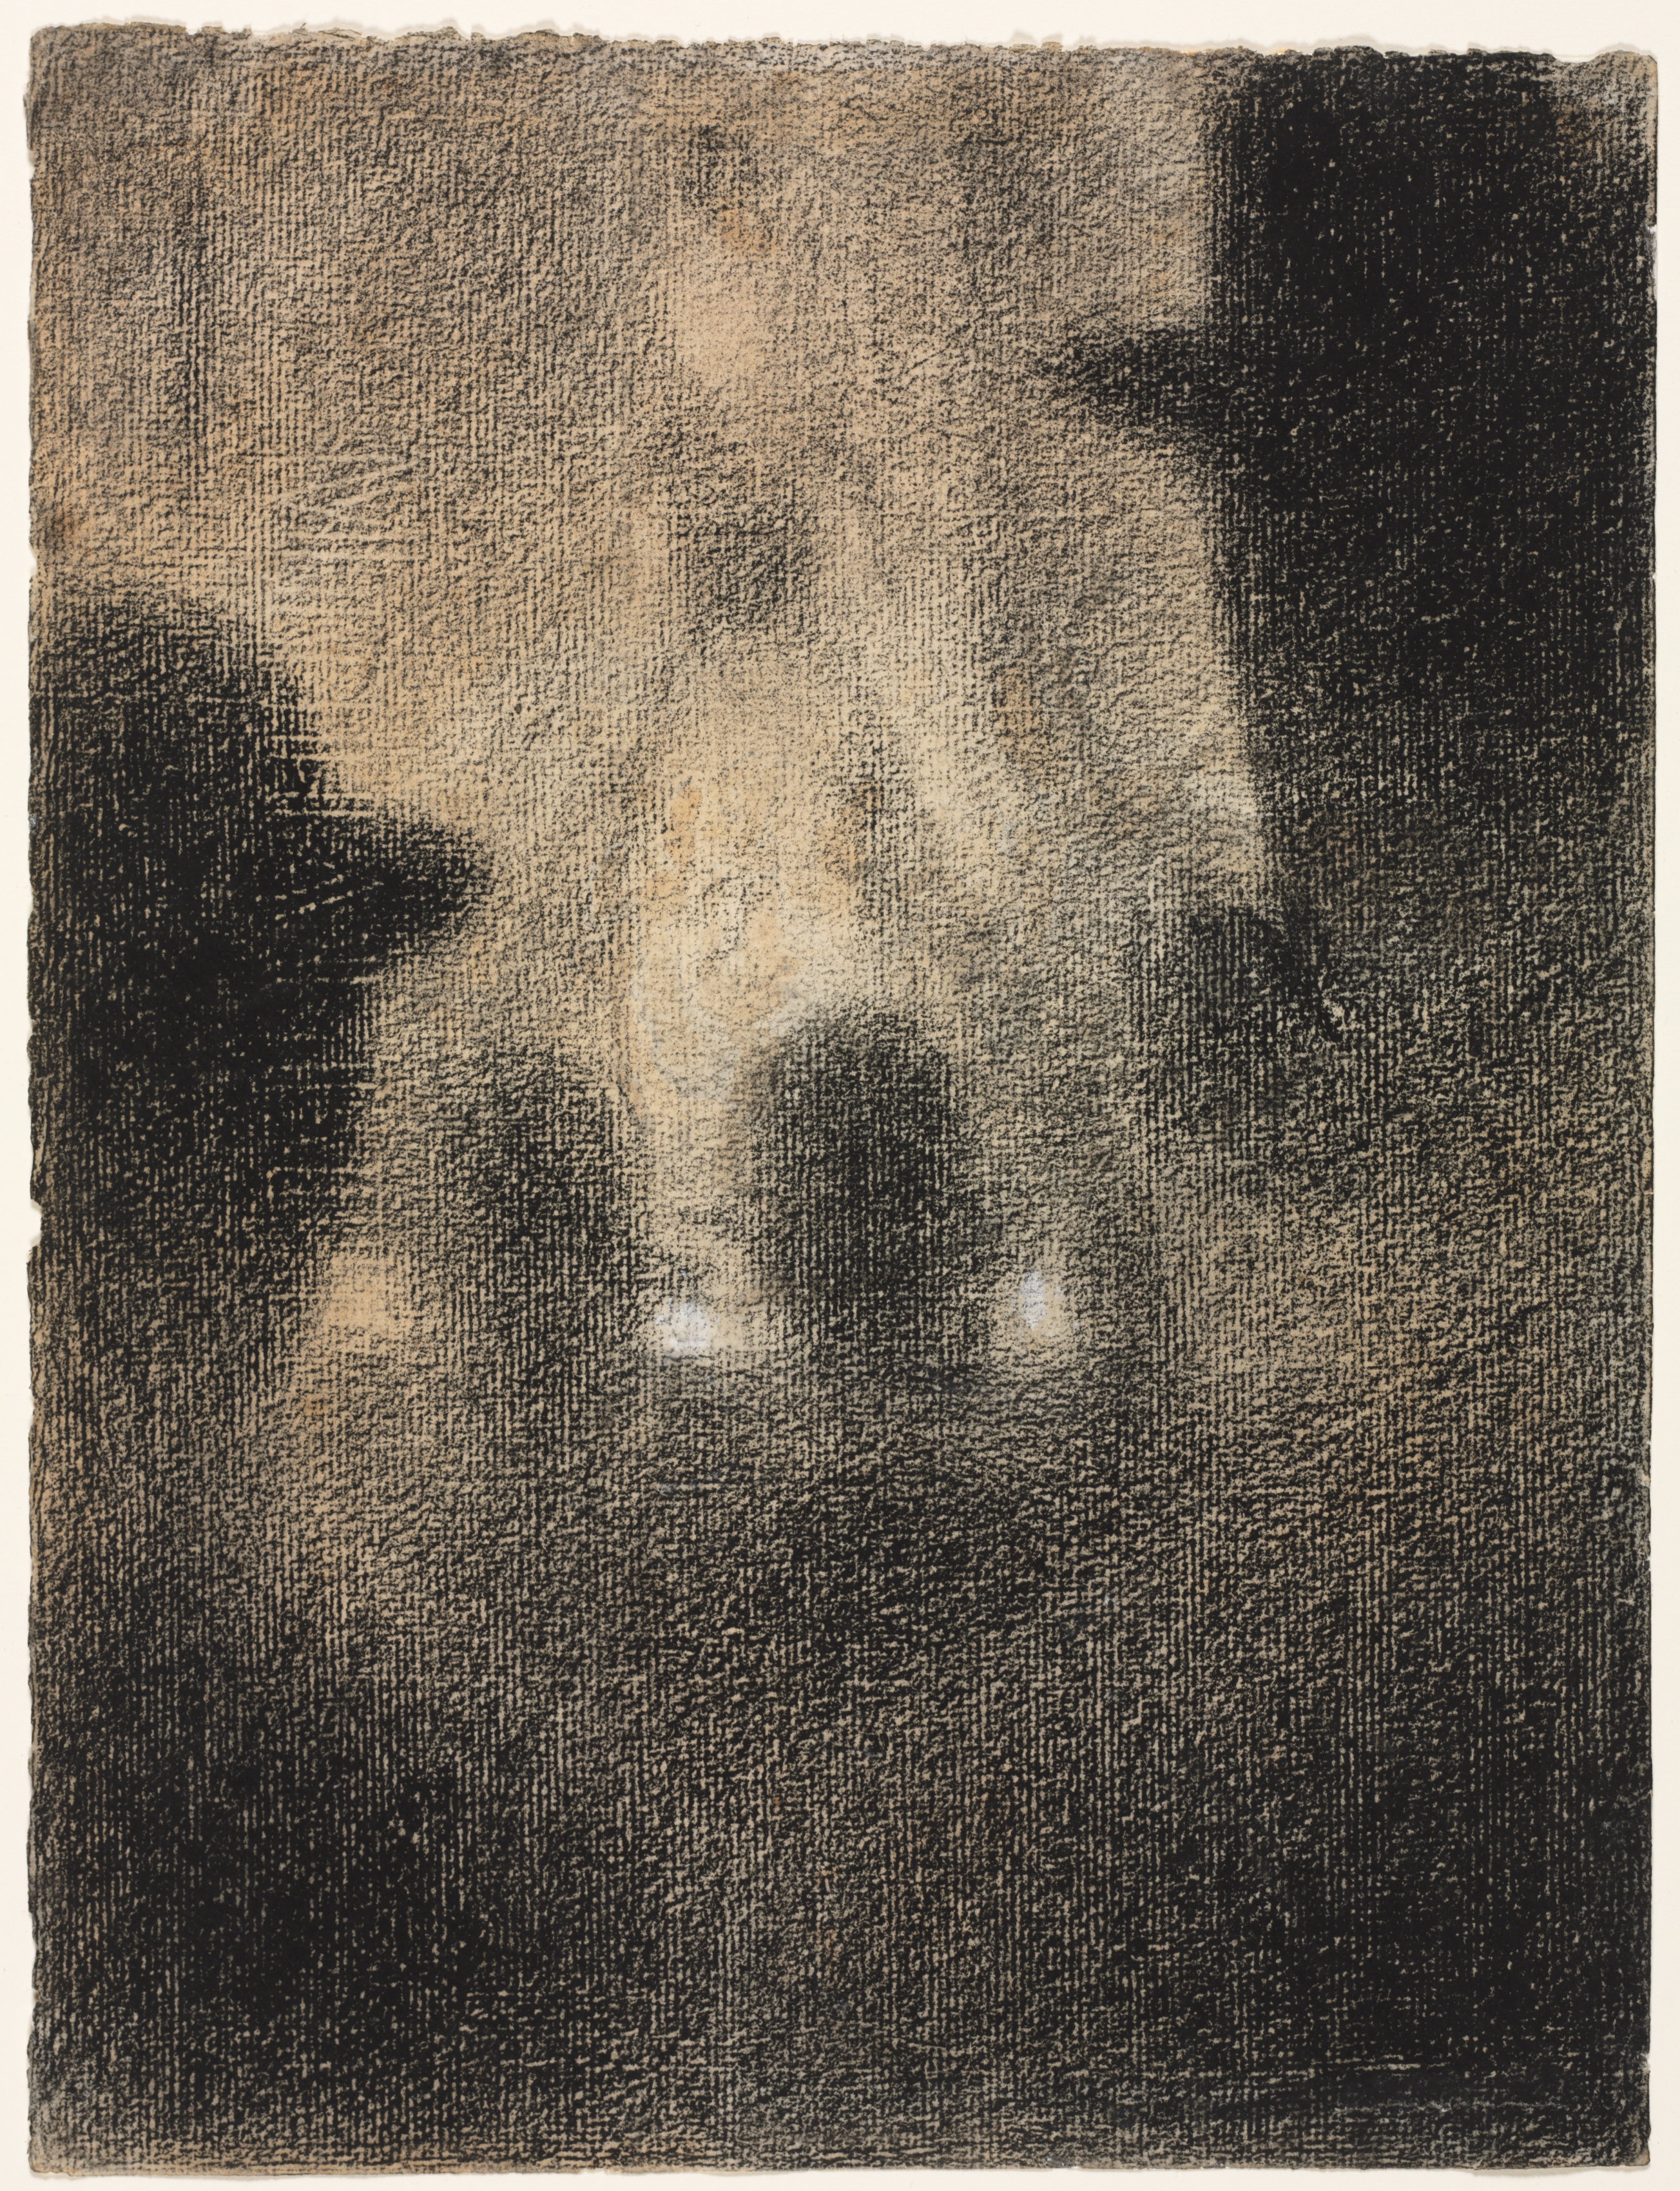 Kávéházi előadás by Georges Seurat - 1887-1888 - 31.4 x 23.6 cm 